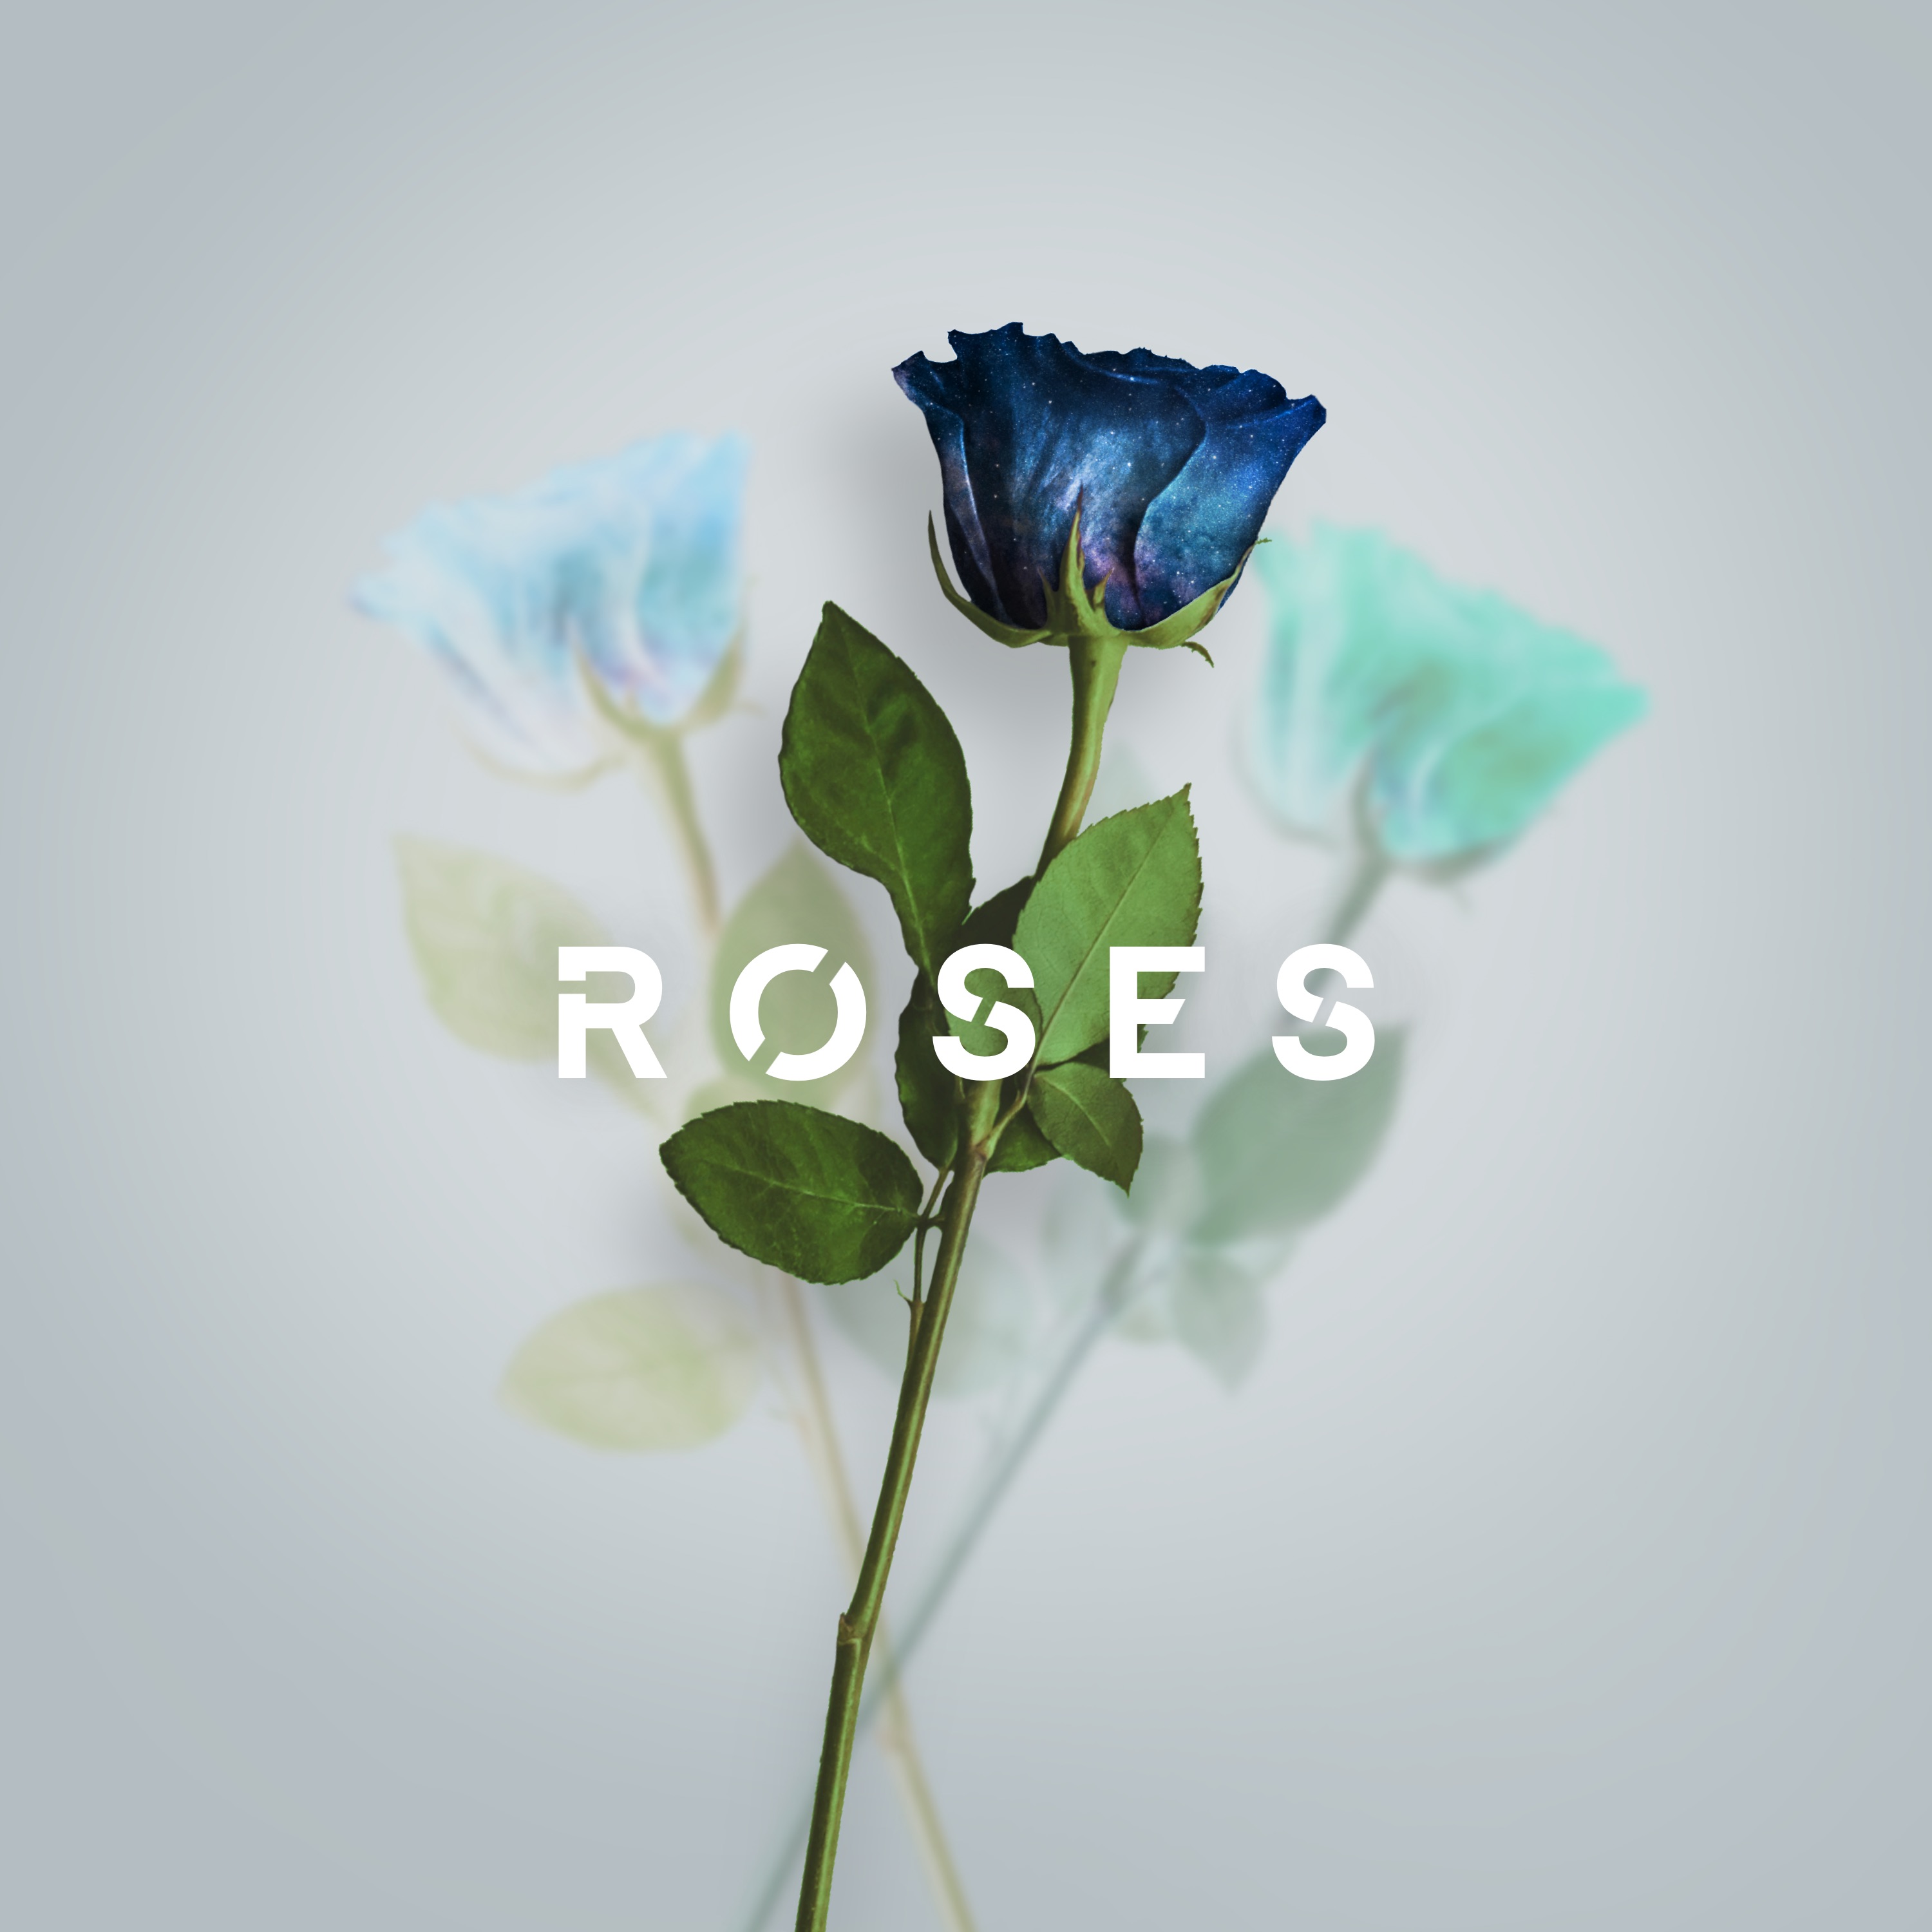 Roses - Daydreamer